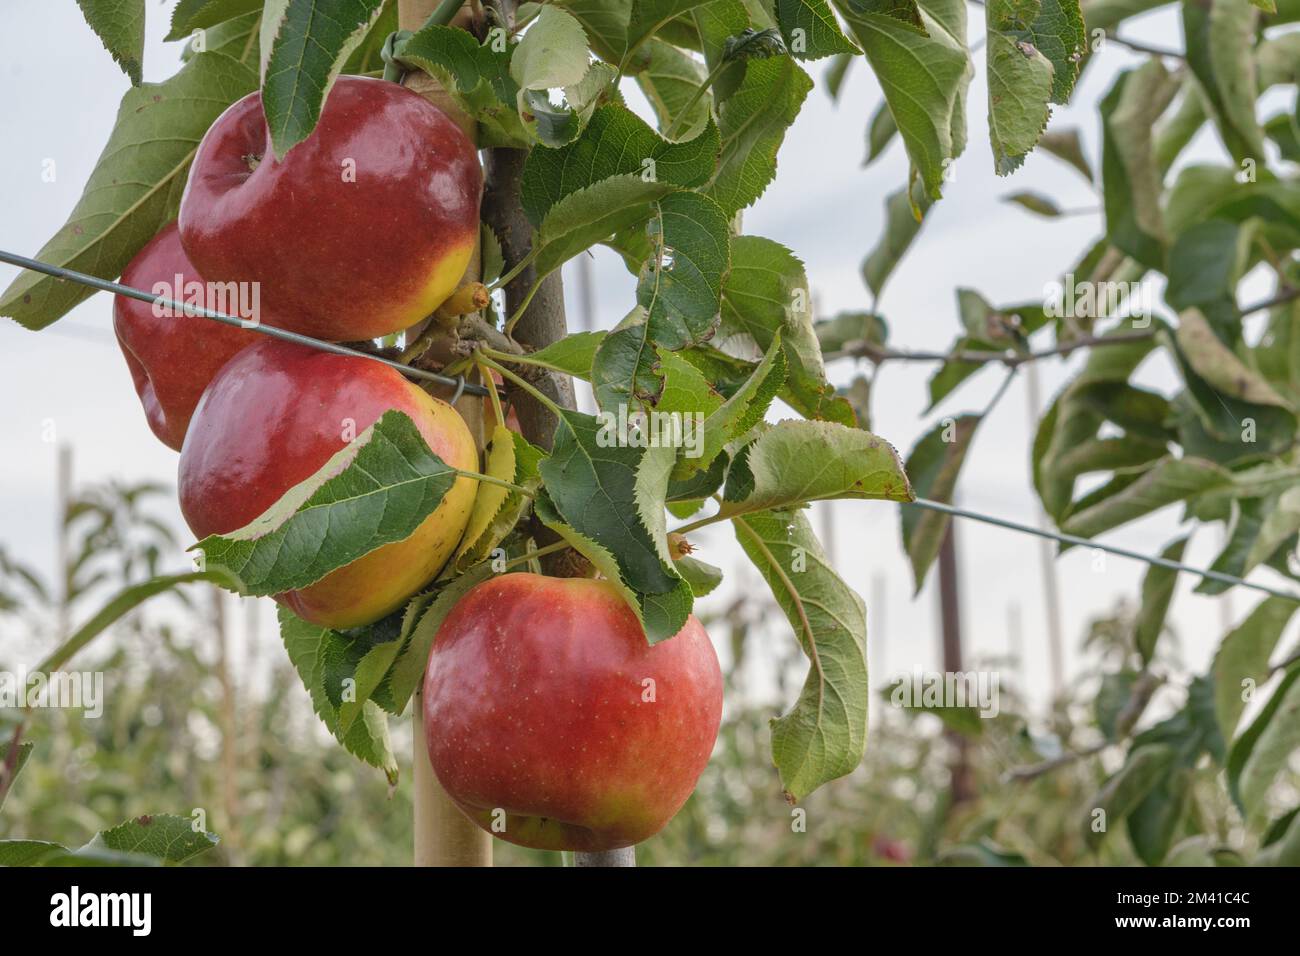 Une pomme rouge mûre est suspendue à la branche. Avant la récolte Banque D'Images